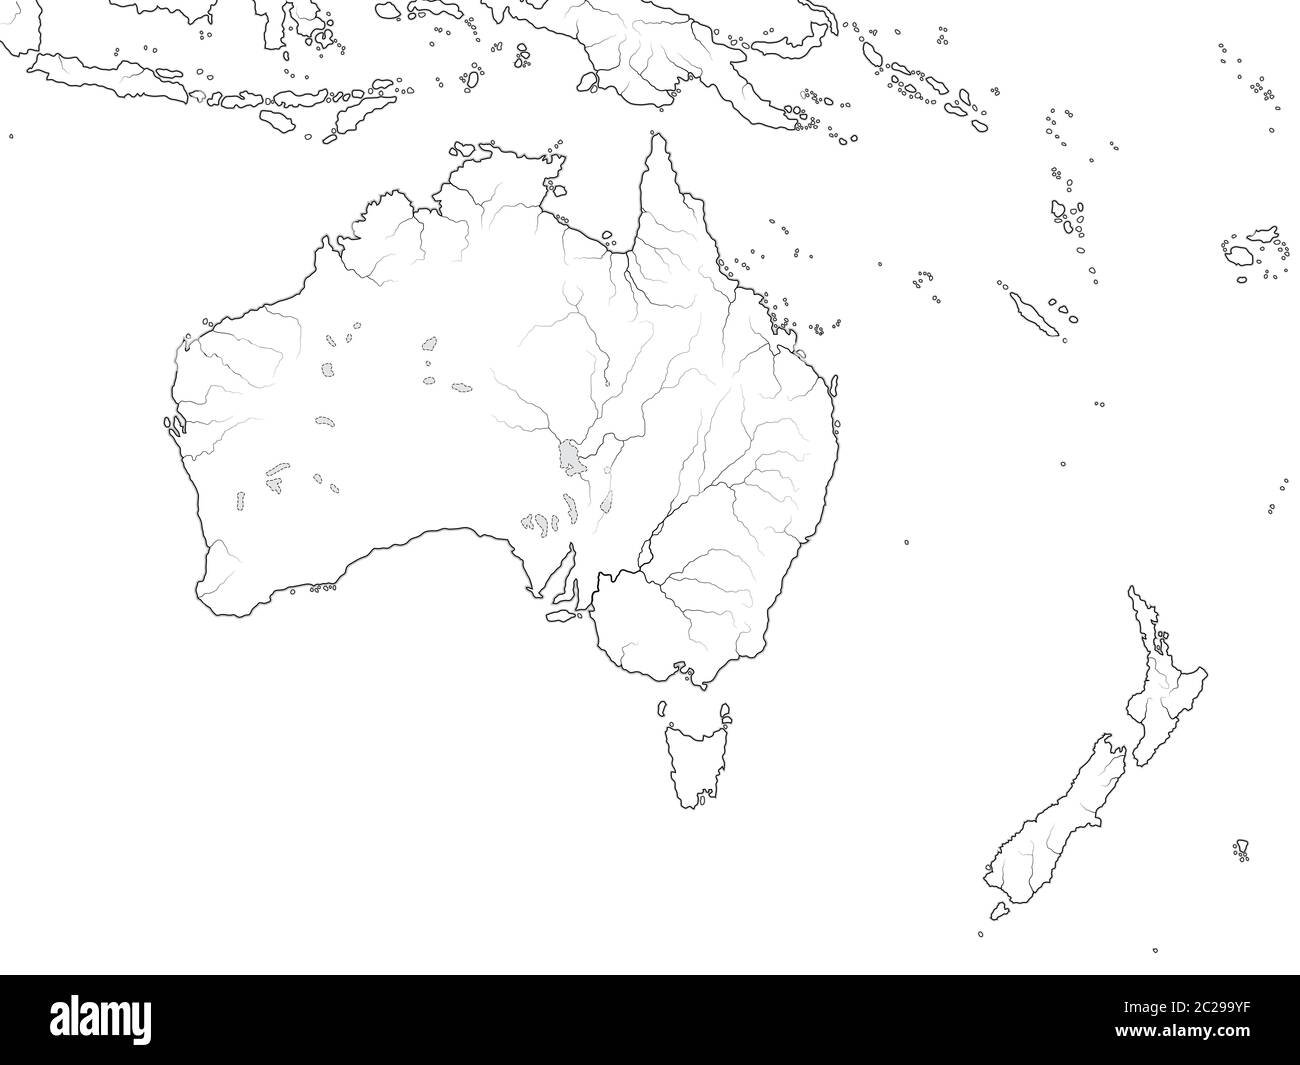 Carte du monde de L'AUSTRALIE CONTINENT : Australie, Nouvelle-Zélande, Océanie, Océan Pacifique. Carte géographique. Banque D'Images